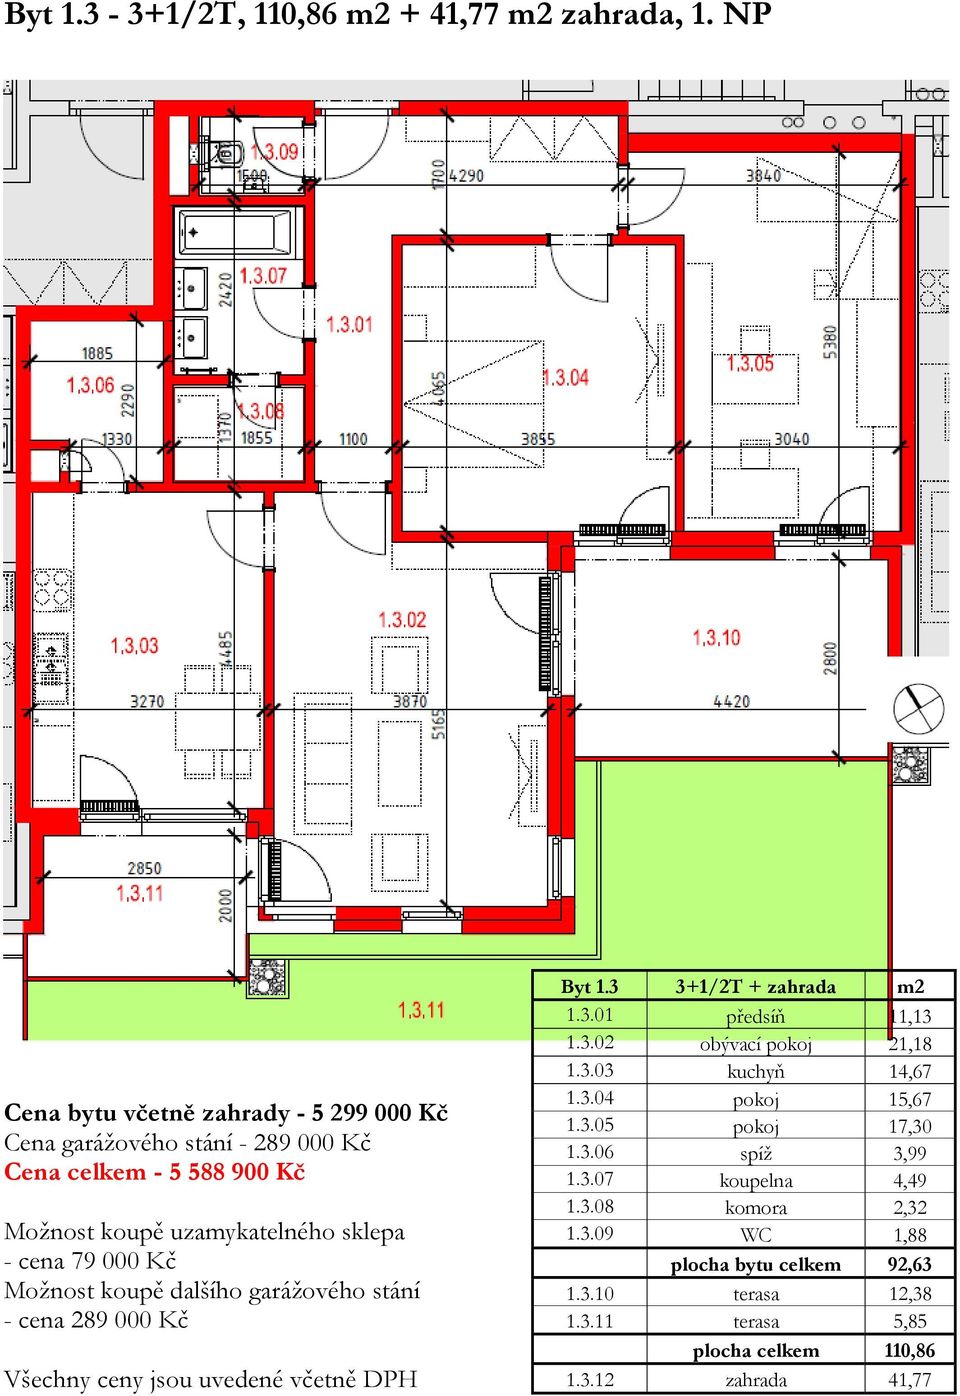 garážového stání - cena 289 000 Kč Všechny ceny jsou uvedené včetně DPH Byt 1.3 3+1/2T + zahrada m2 1.3.01 předsíň 11,13 1.3.02 obývací pokoj 21,18 1.